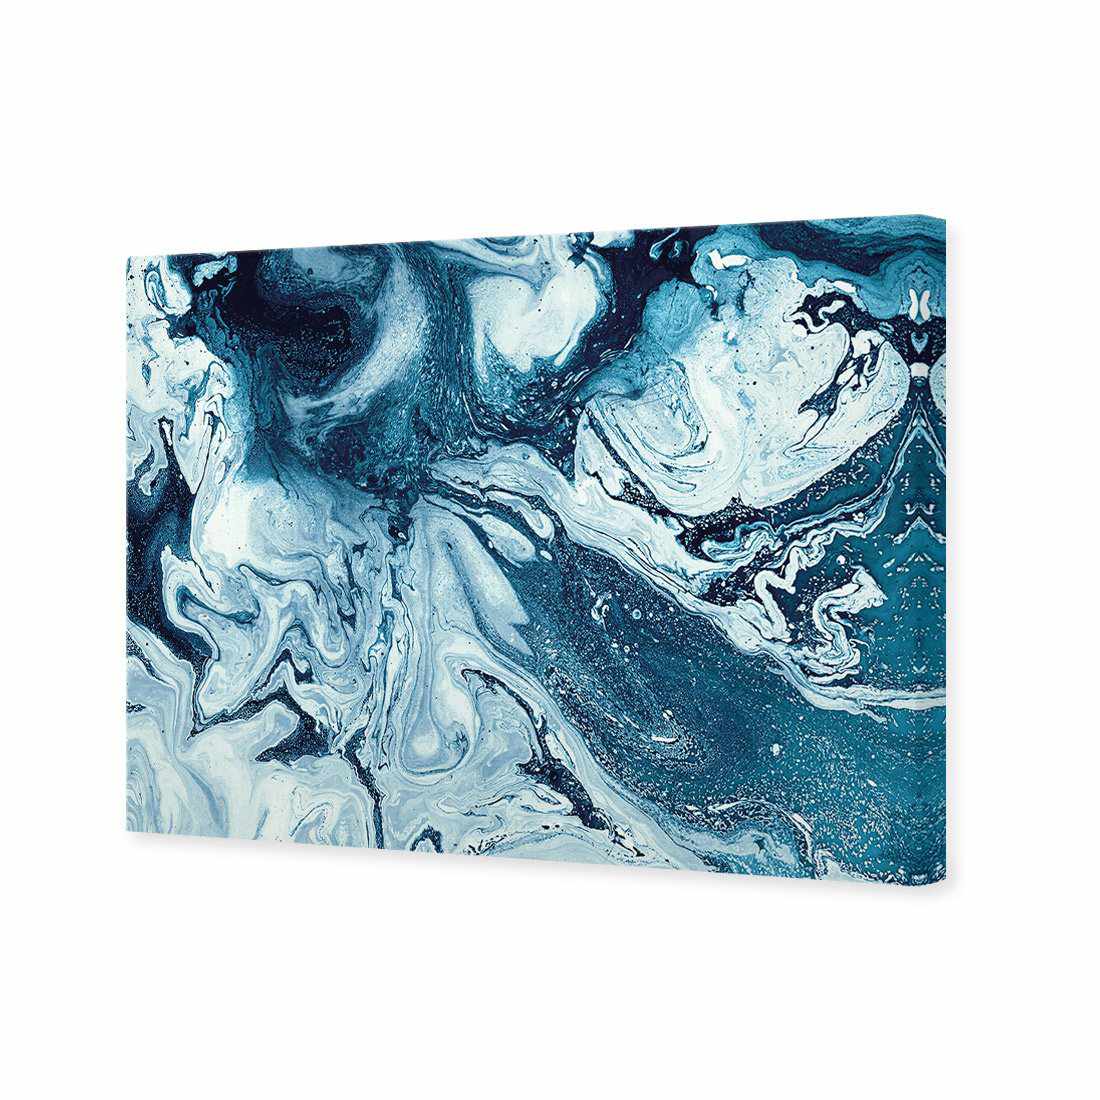 Liquified, Deep Blue Canvas Art-Canvas-Wall Art Designs-45x30cm-Canvas - No Frame-Wall Art Designs